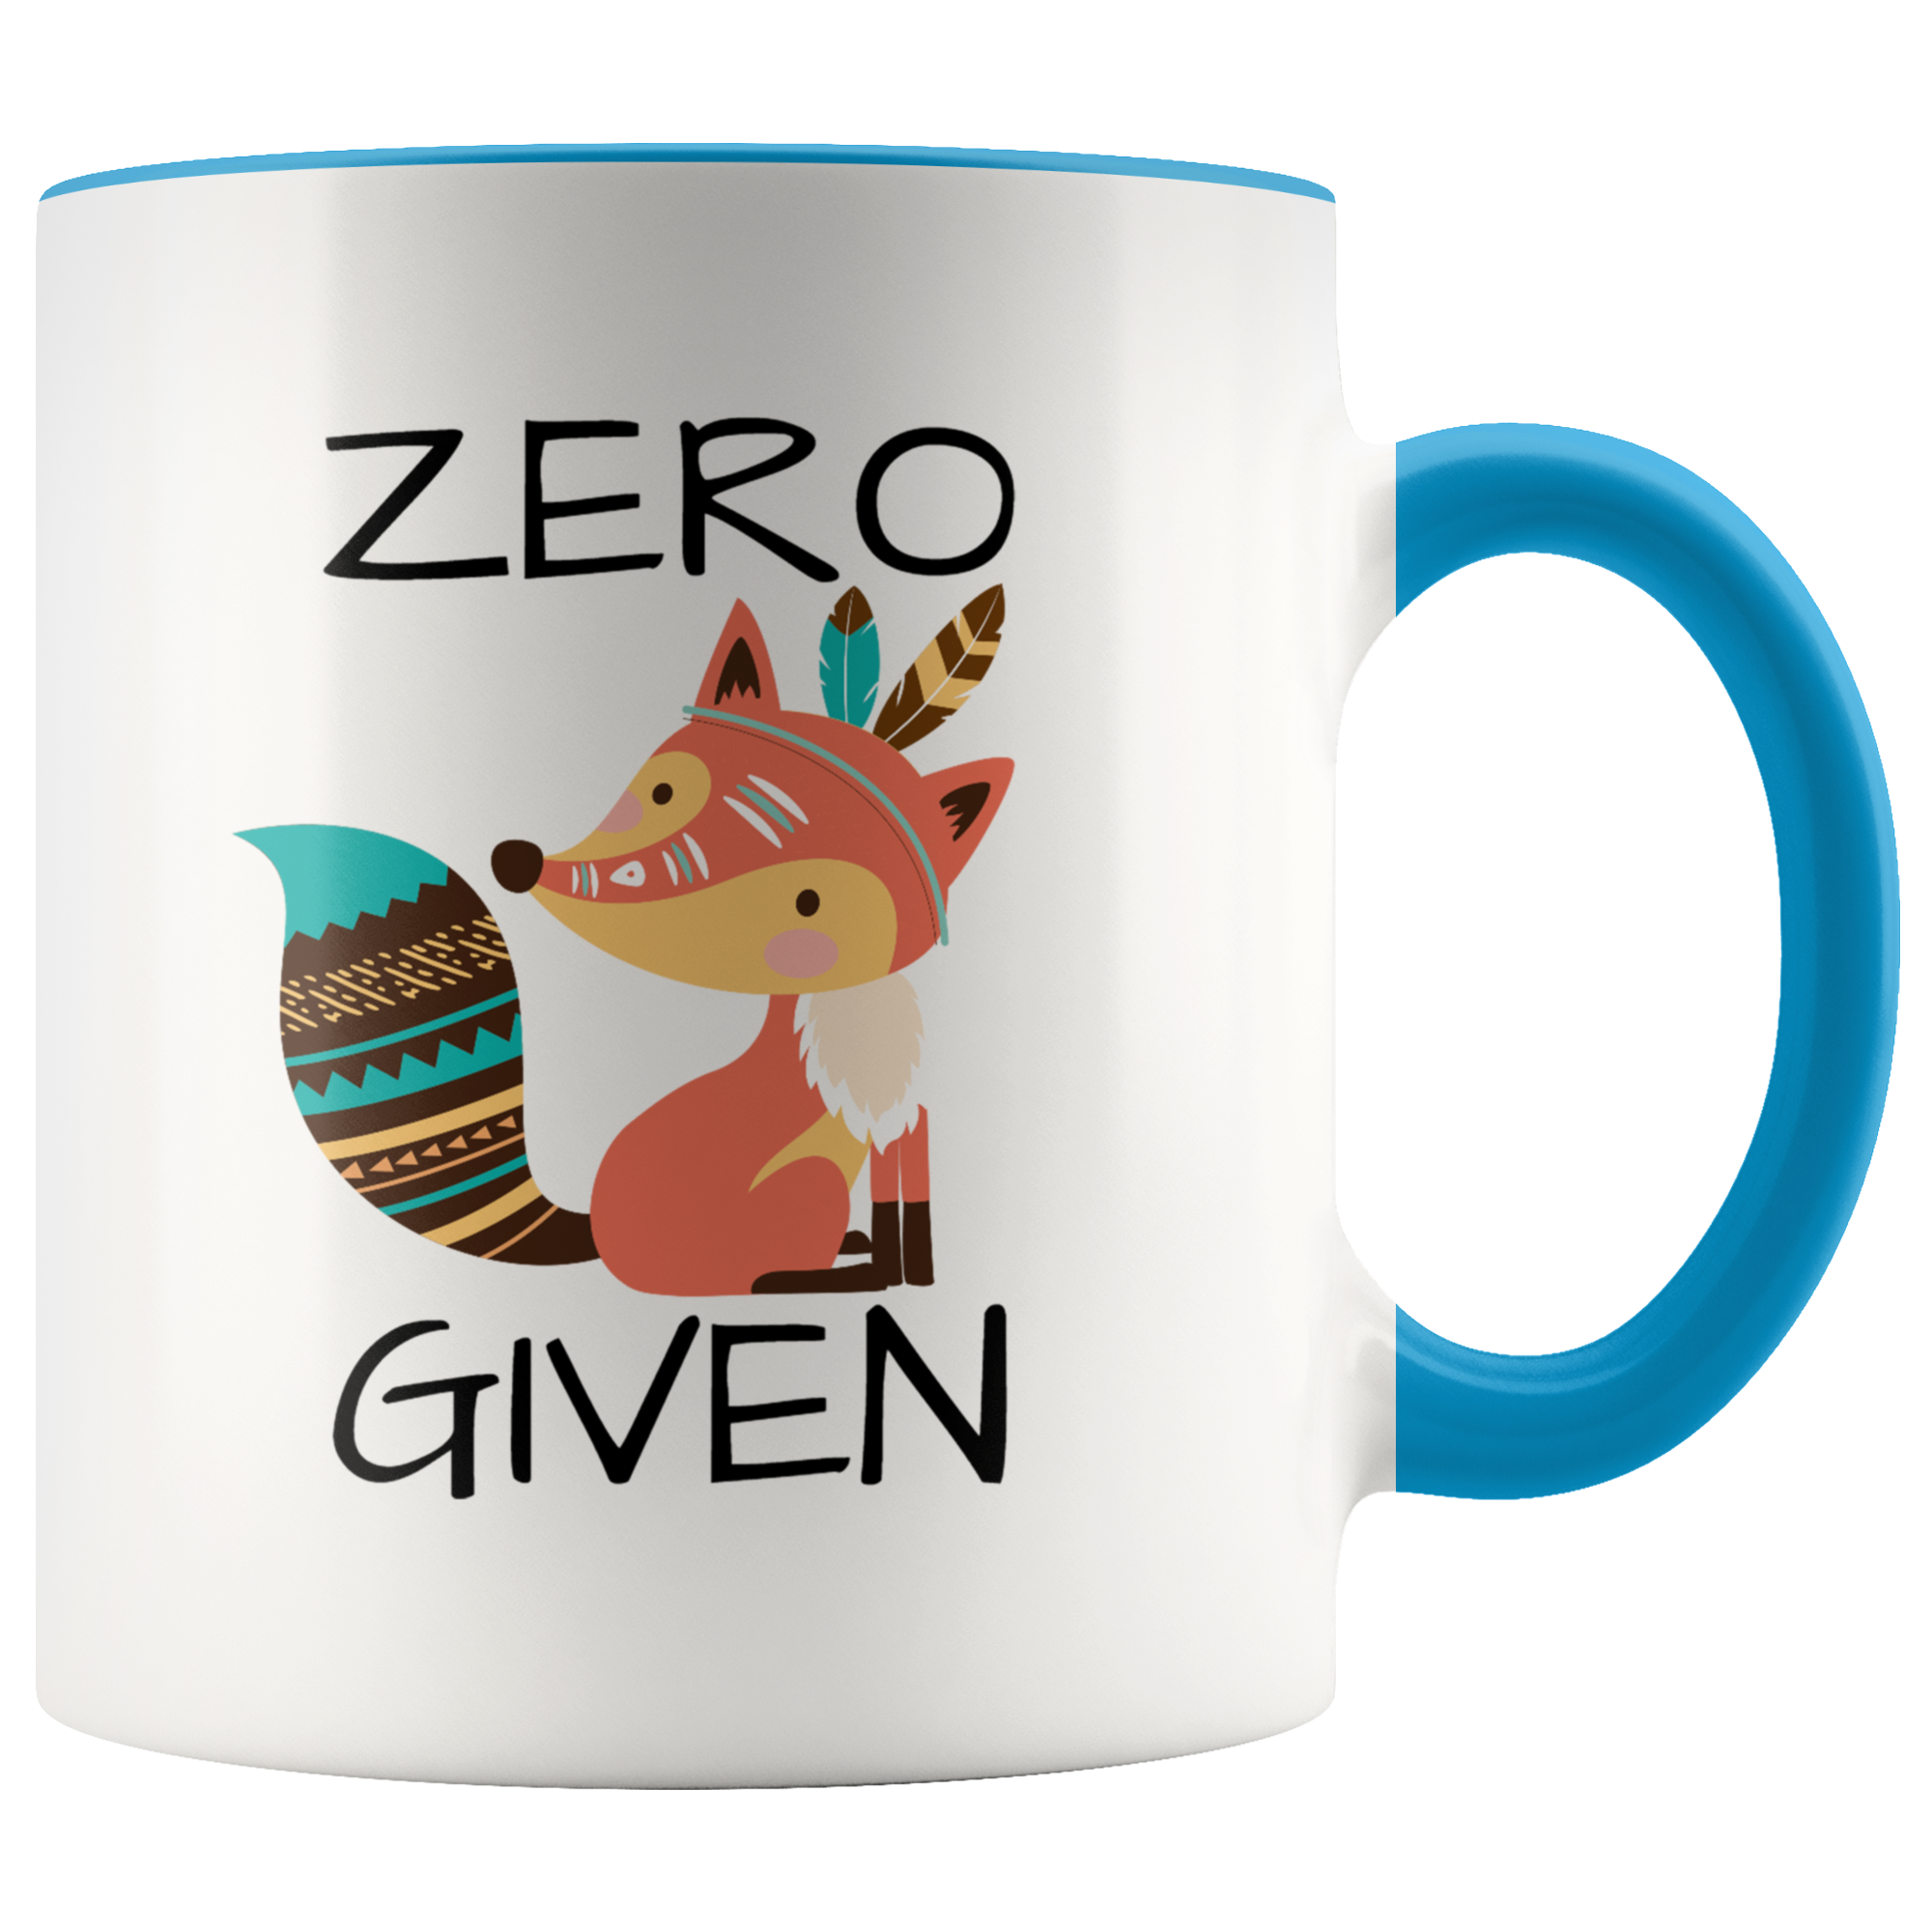 Zero Fox Given Mug